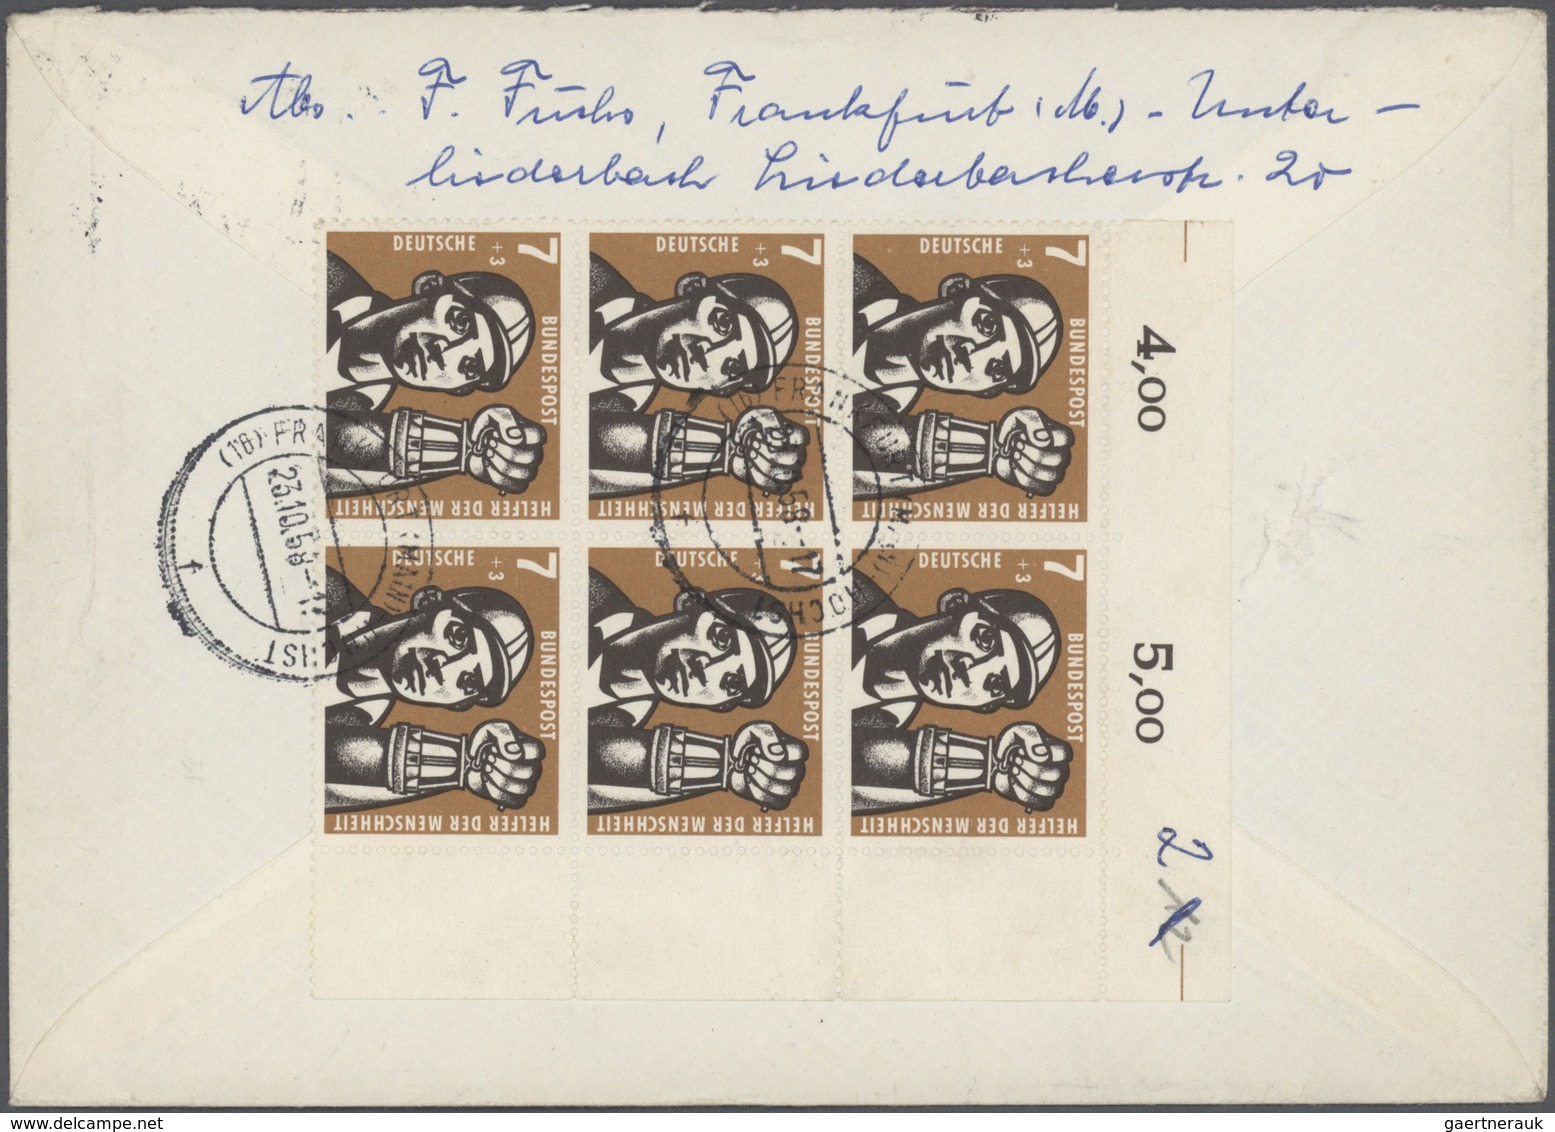 Bundesrepublik Deutschland: 1954/1959, vielseitige Sammlung von ca. 340 Briefen und Karten mit Sonde